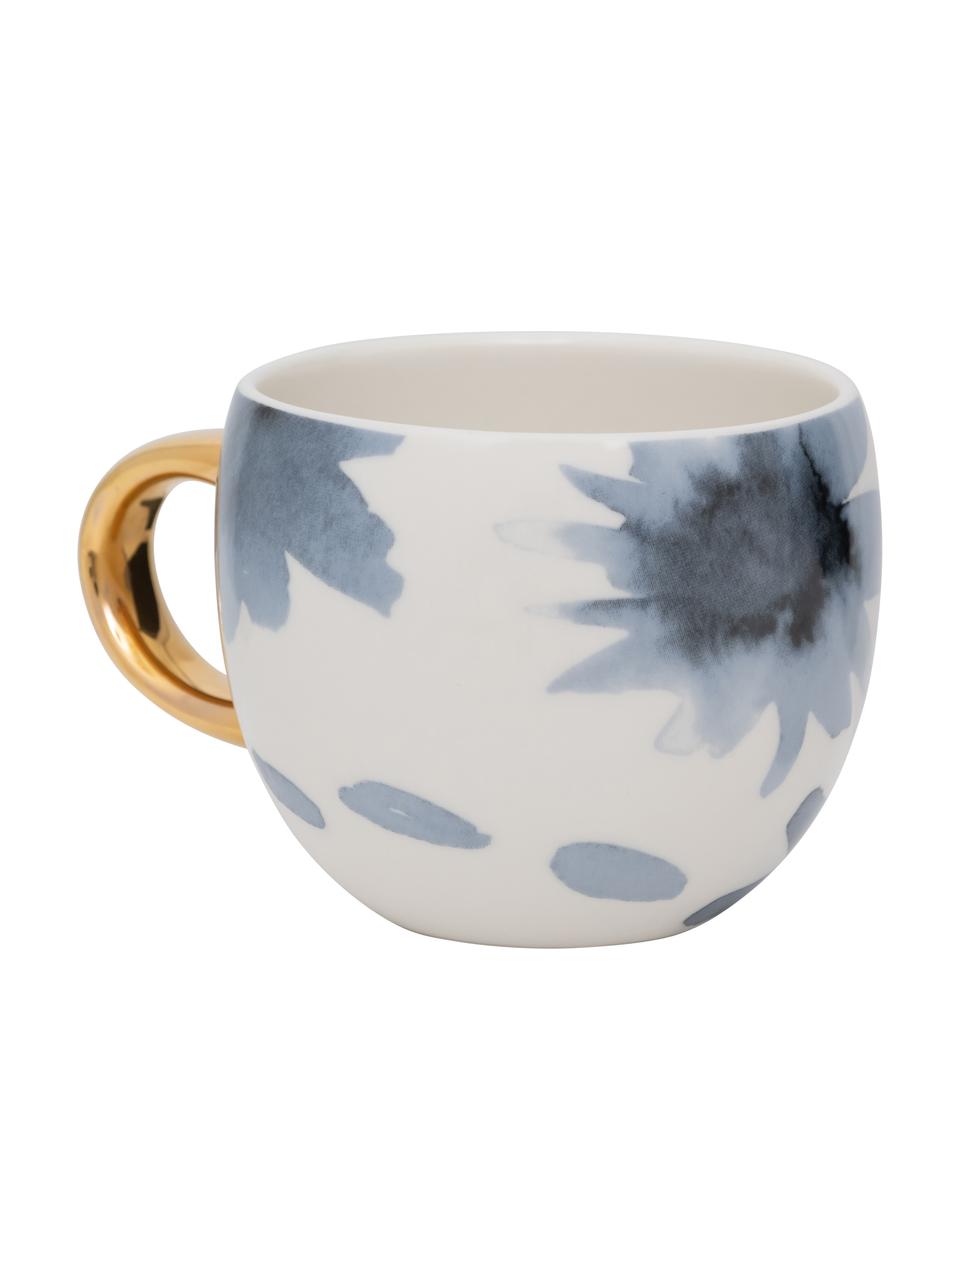 Bemalte Tasse Good Evening mit goldenem Griff, Steingut, Weiss, Blau, Goldfarben, Ø 11 x H 9 cm, 500 ml